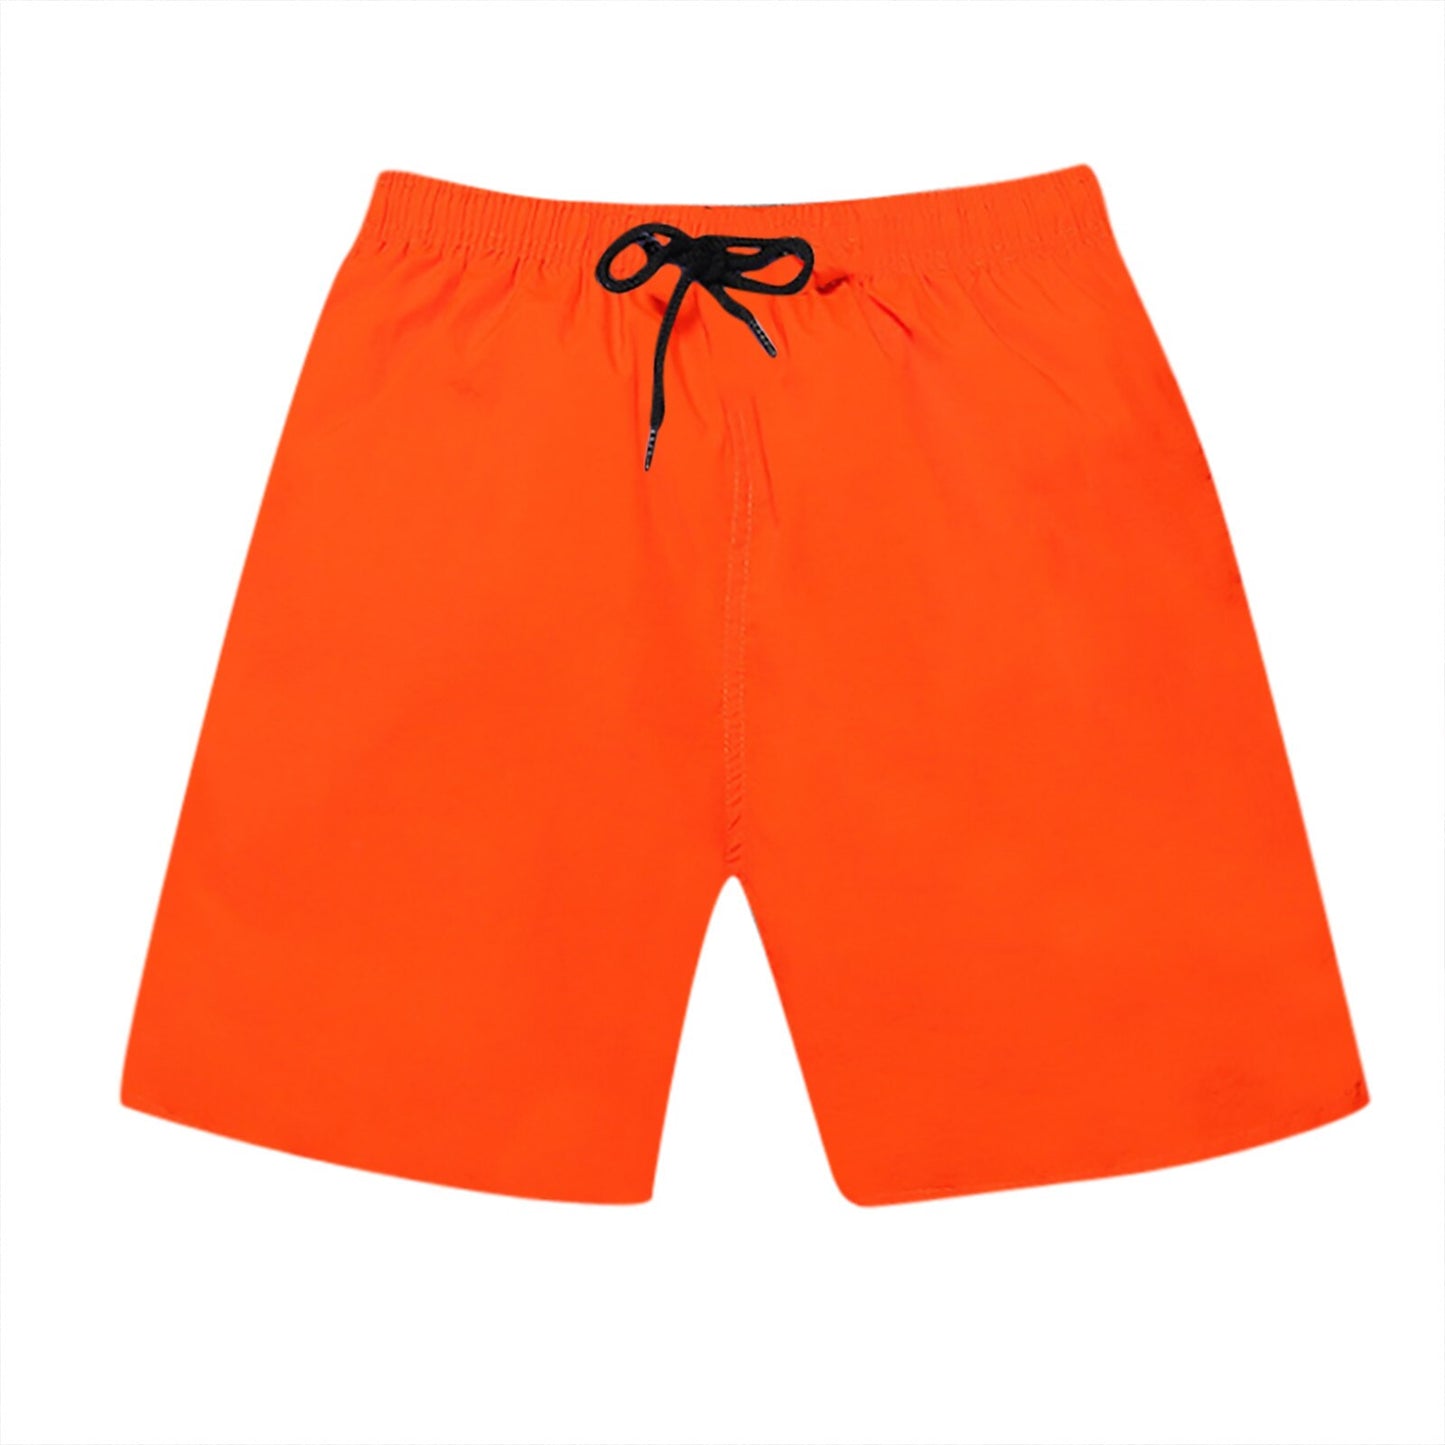 Men's Stretch Swim Trunks Quick Dry Beach Shorts Wmesh Lining מכנסיים קצרים Kurze Hosen Herren Chort Homme Essentials Shorts